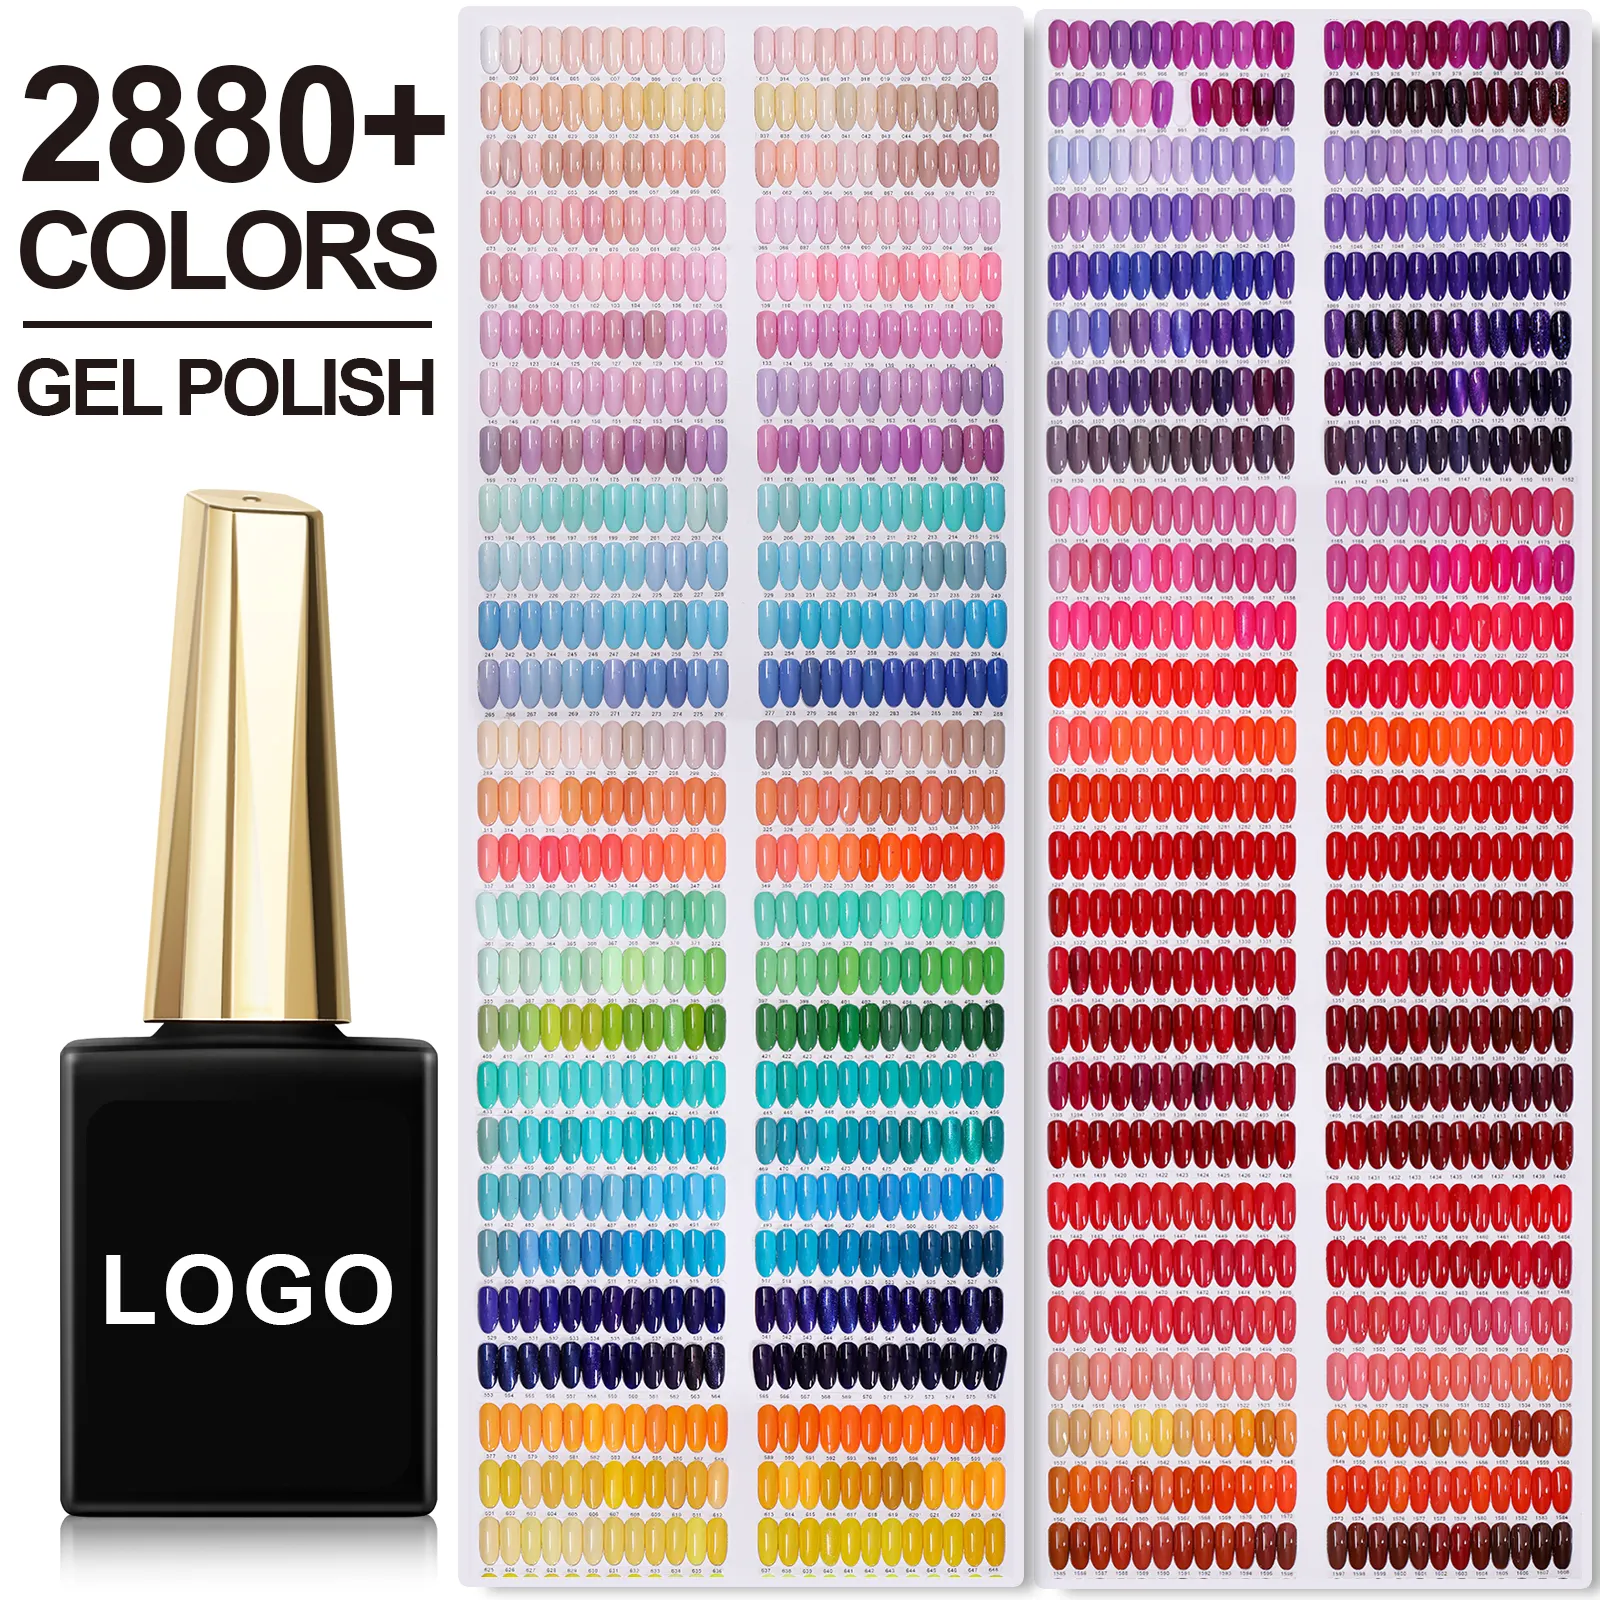 УФ-Гель-лак для ногтей с индивидуальным логотипом, 2880 цветов, лидер продаж, Гель-лак OEM/ODM, индивидуальный логотип, частная этикетка, сделанная вашим брендом